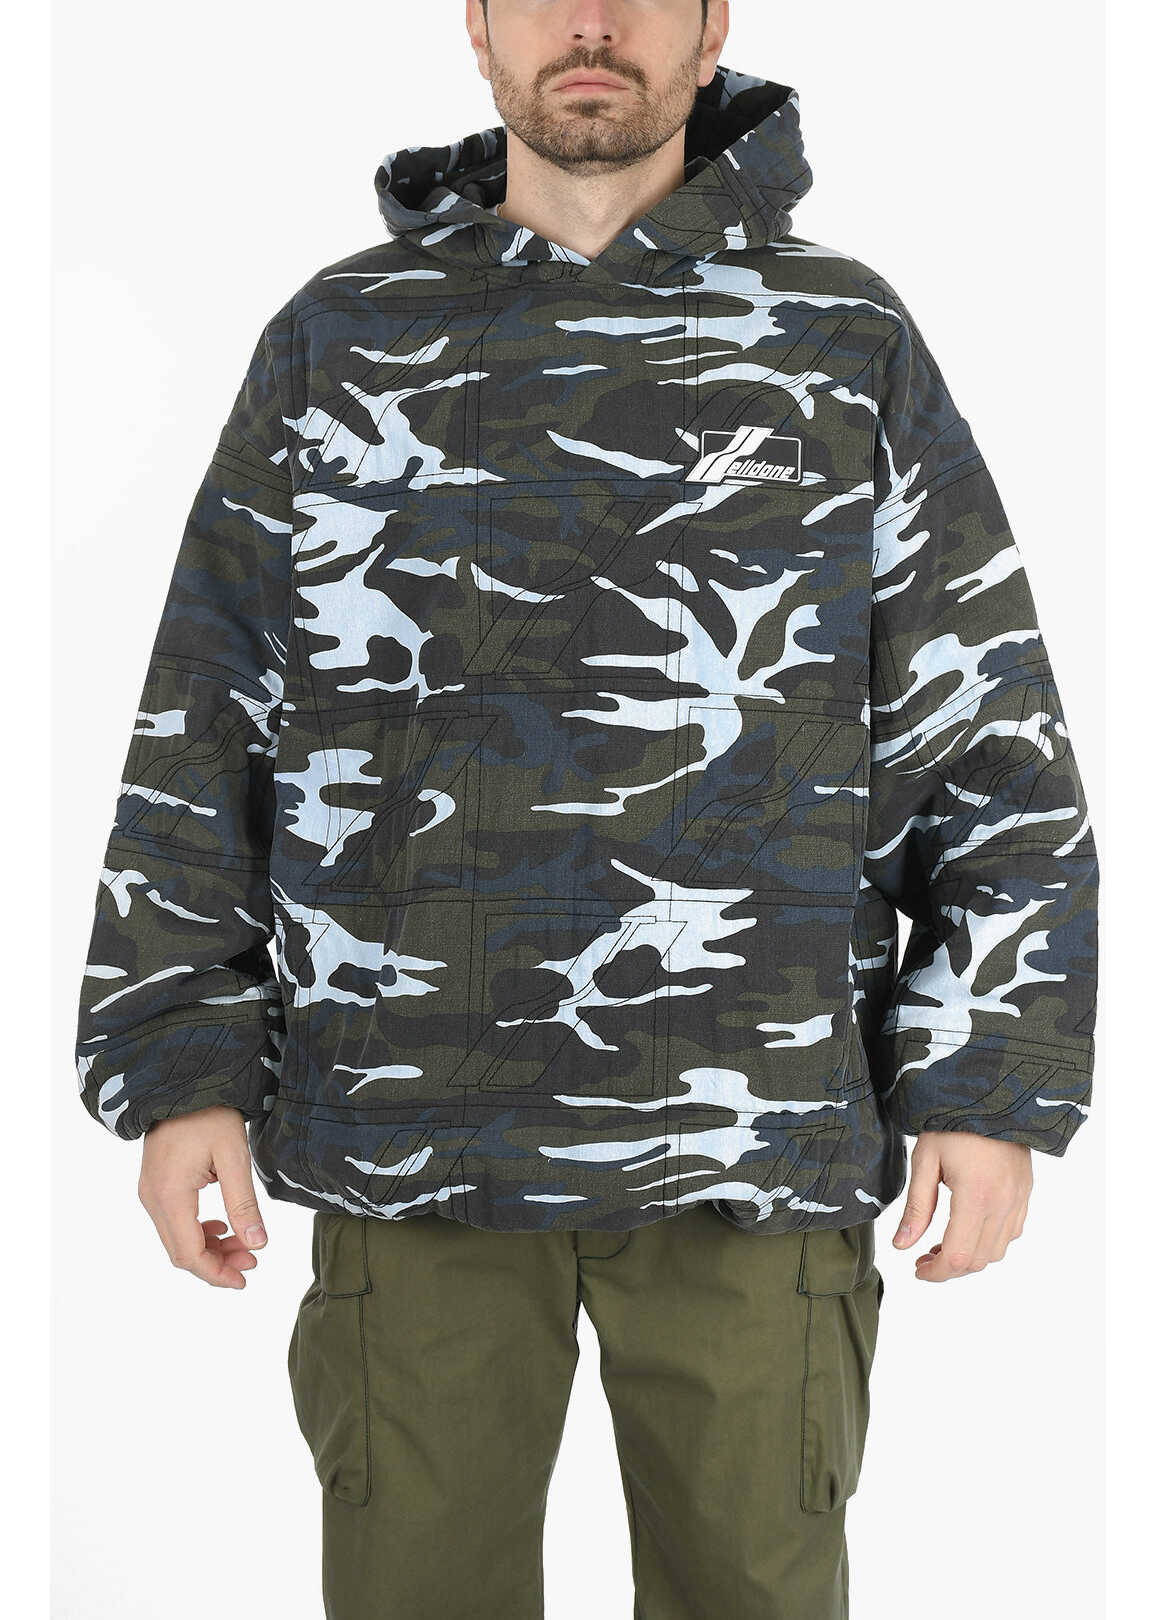 WE11DONE Hoodie Camouflage Sweatshirt Multicolor